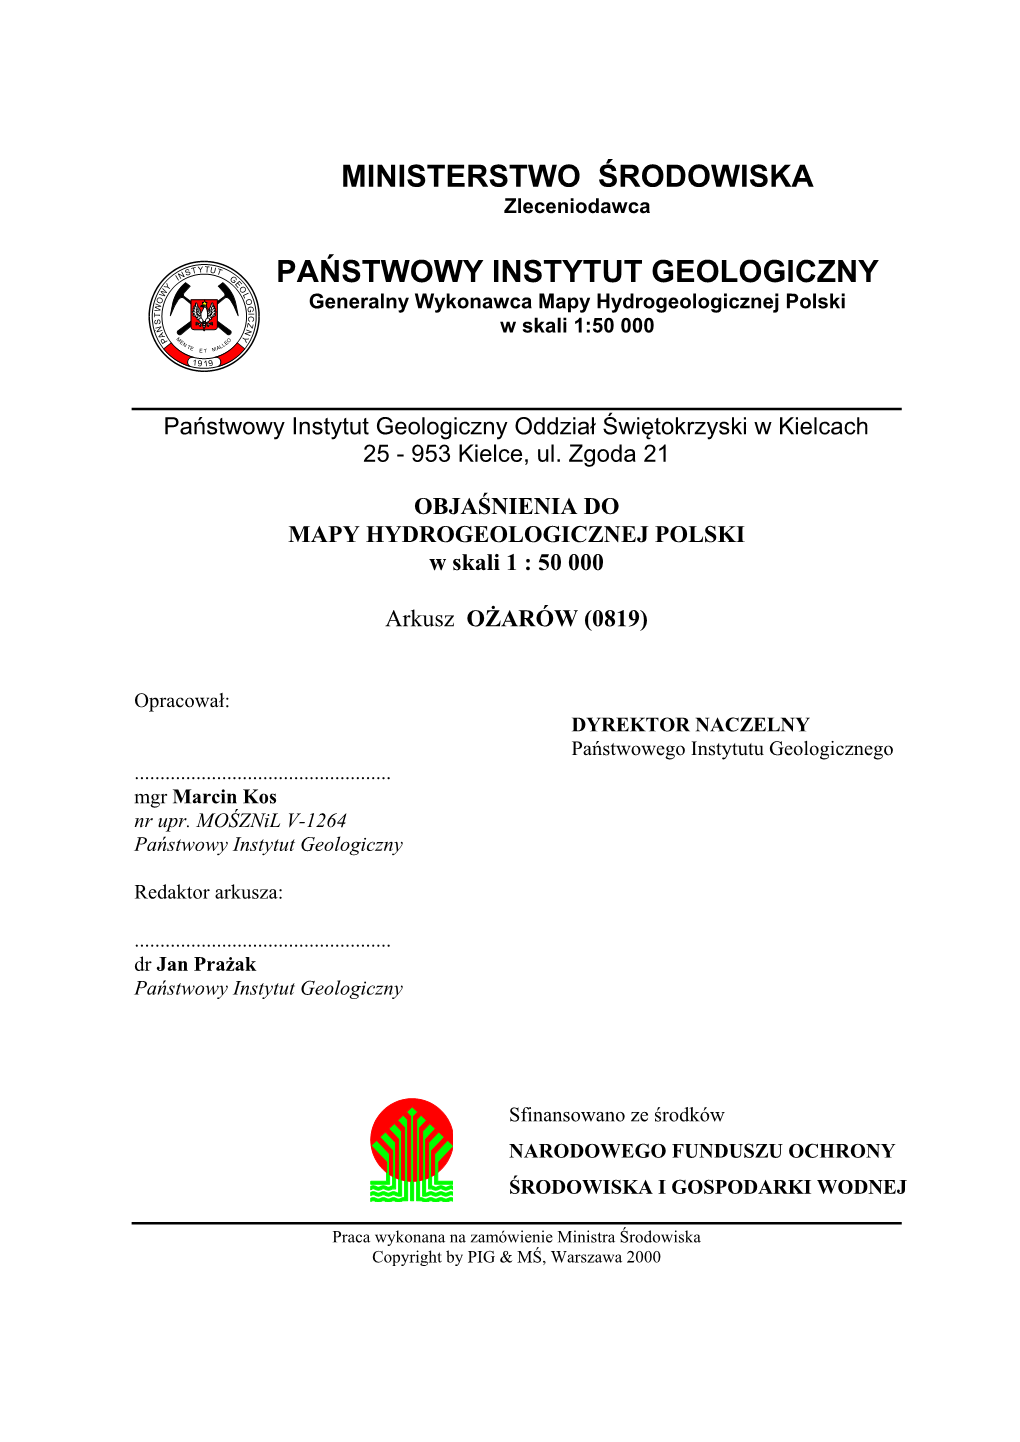 Mapa Hydrogeologiczna Polski 1:50 000 Arkusz Ożarów - Plansza Główna (Materiał Archiwalny W PIG) Tablica 2